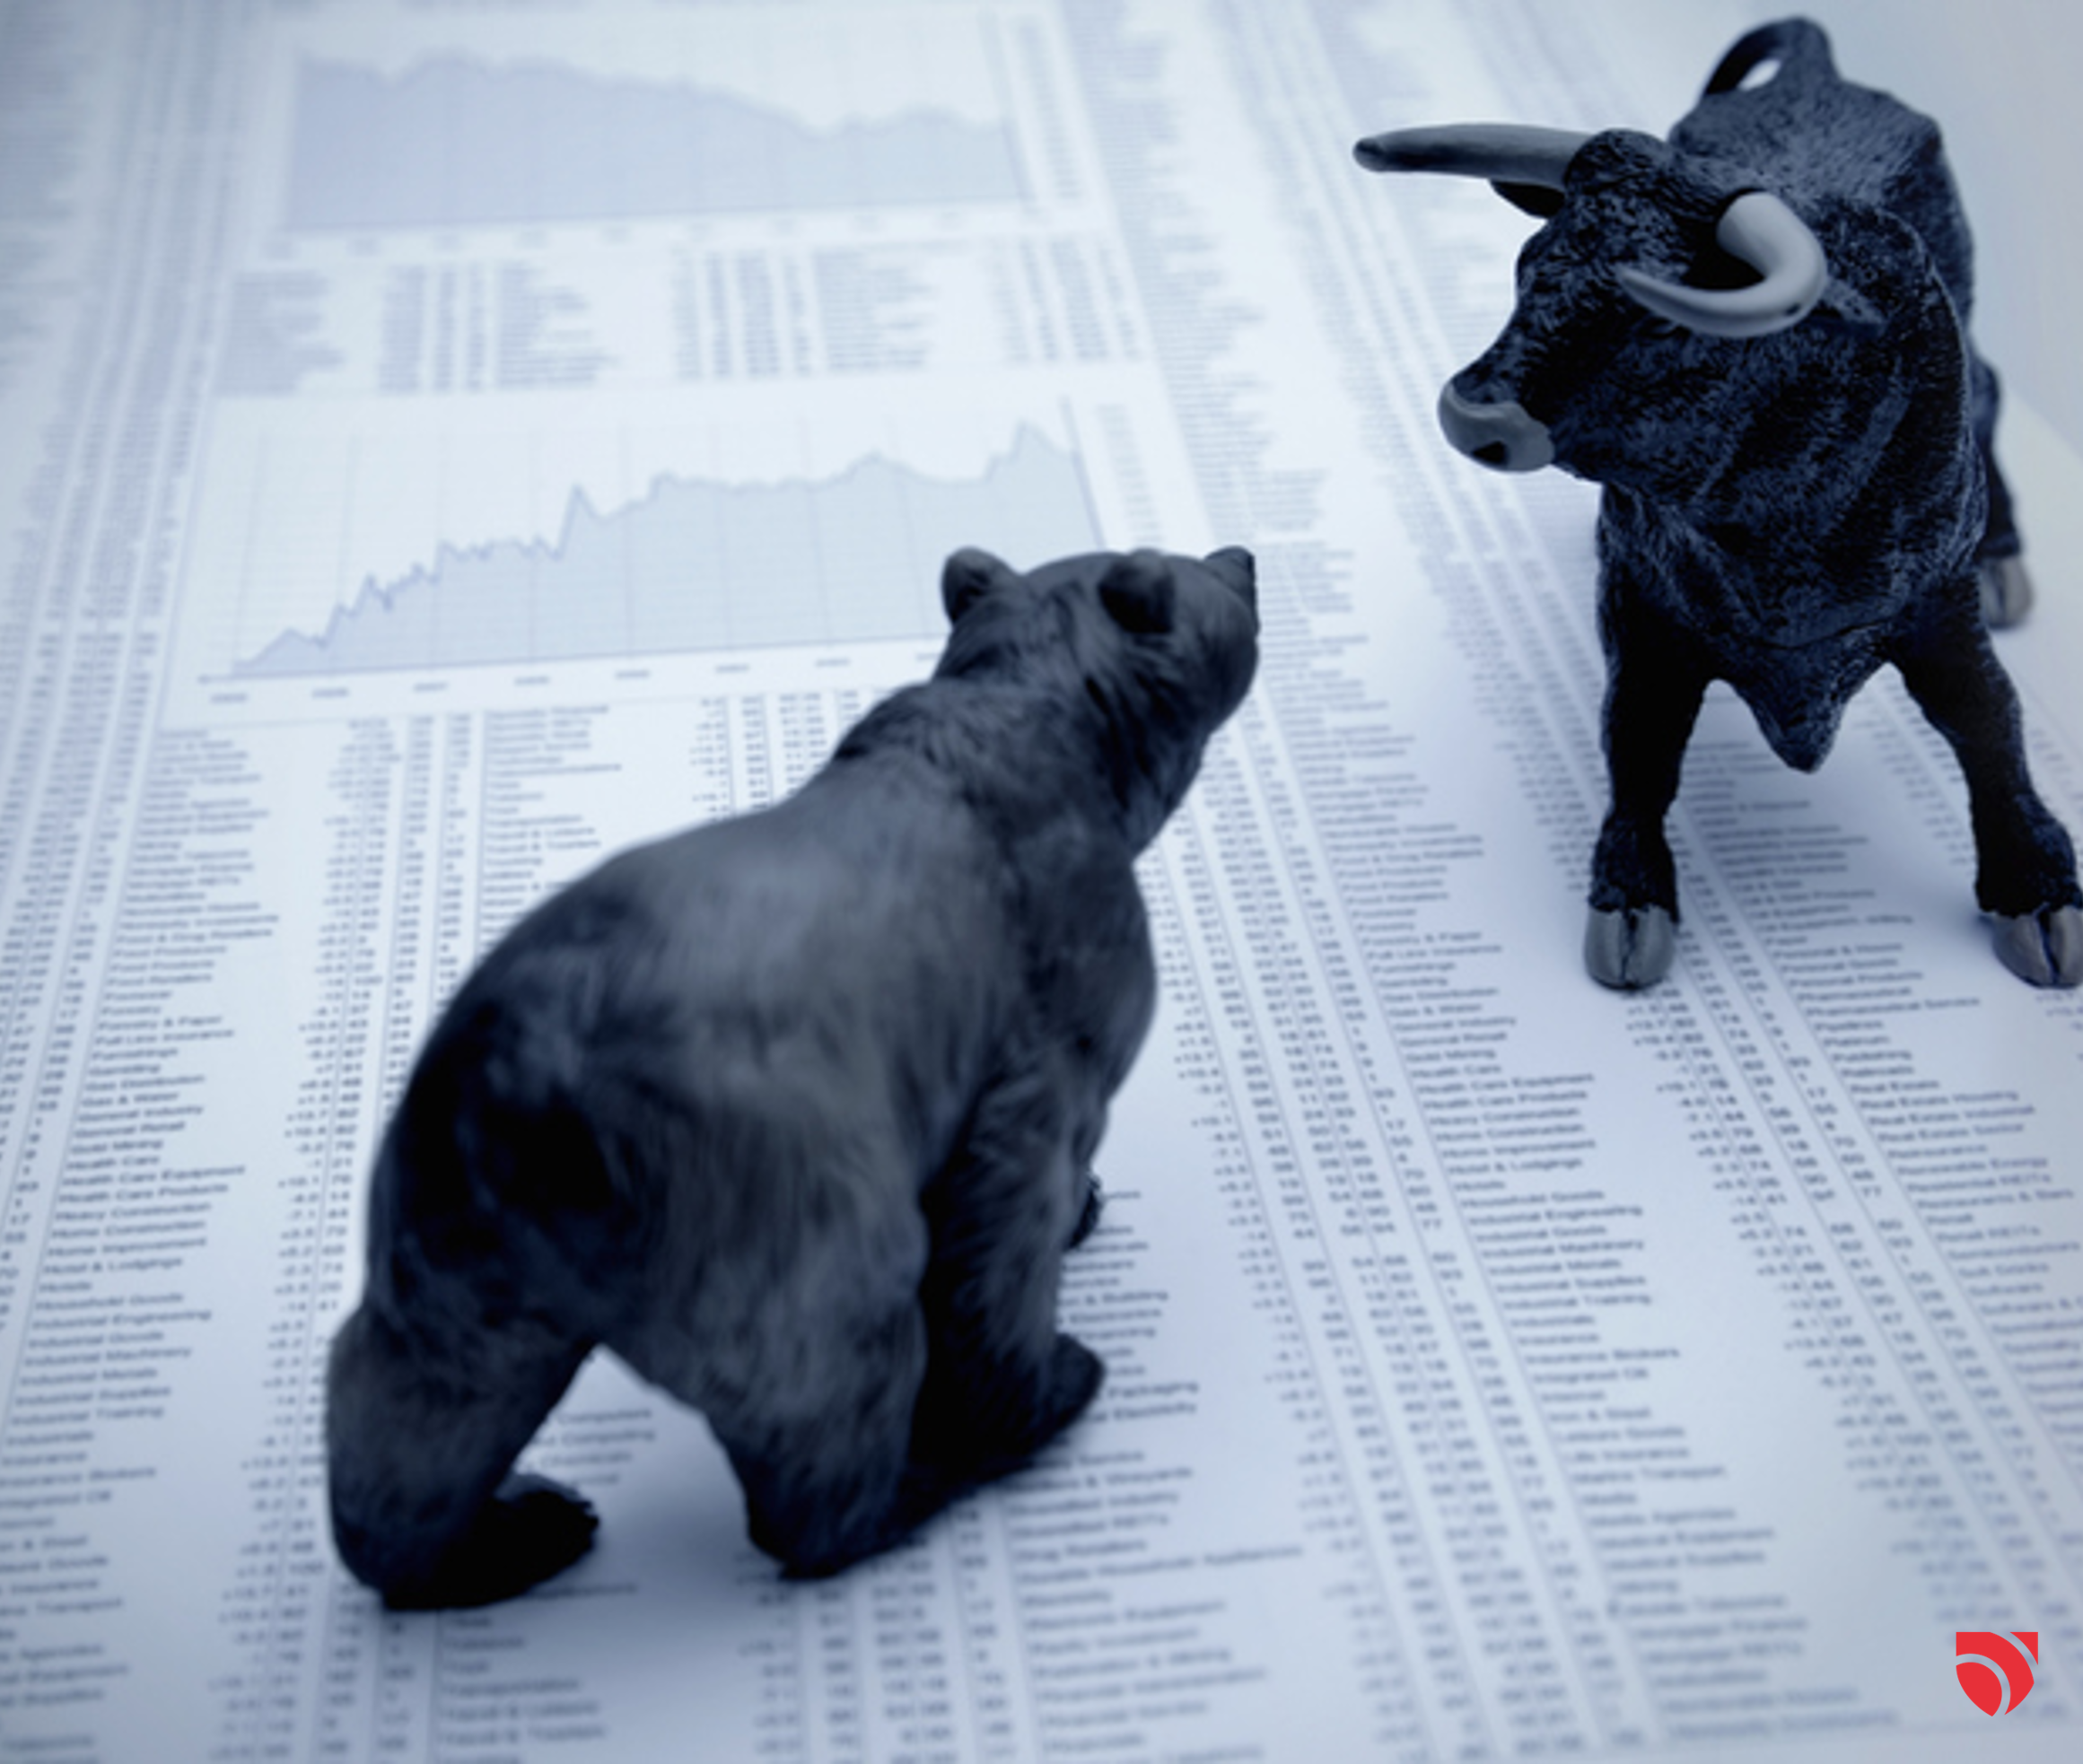 Bull & bear - tout n’est pas une question de récession